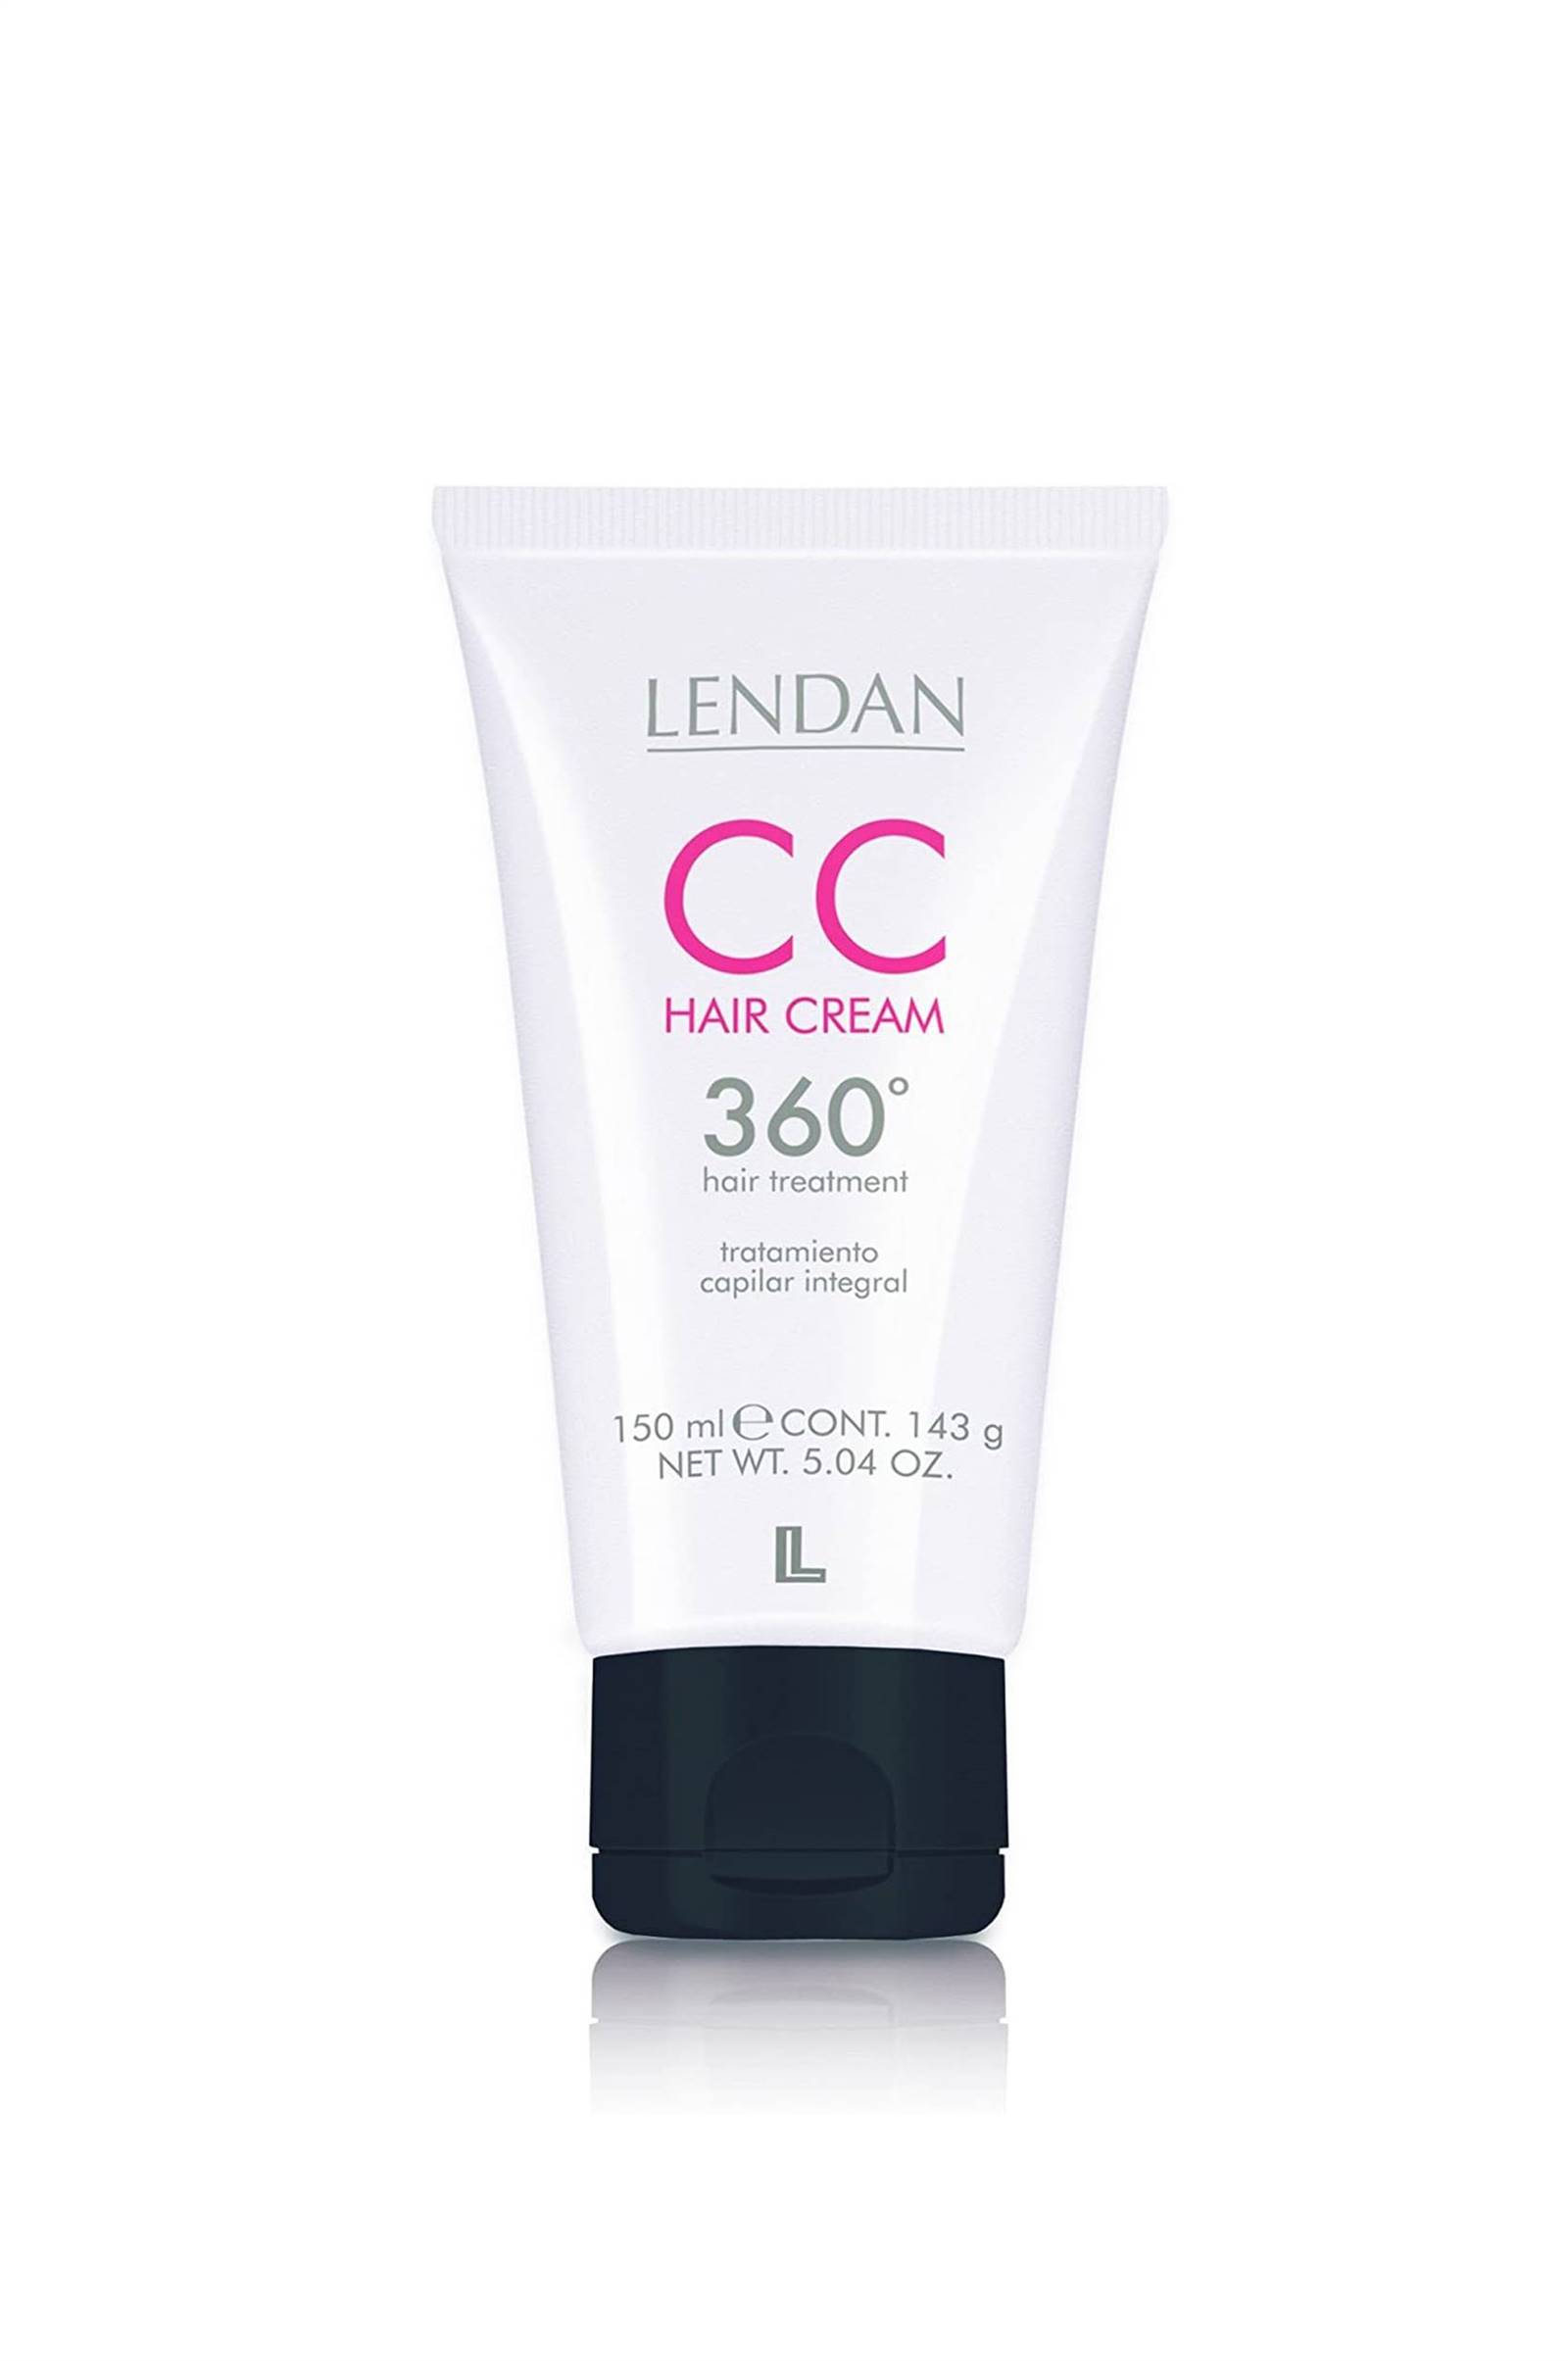 CC Hair Cream de Lendan